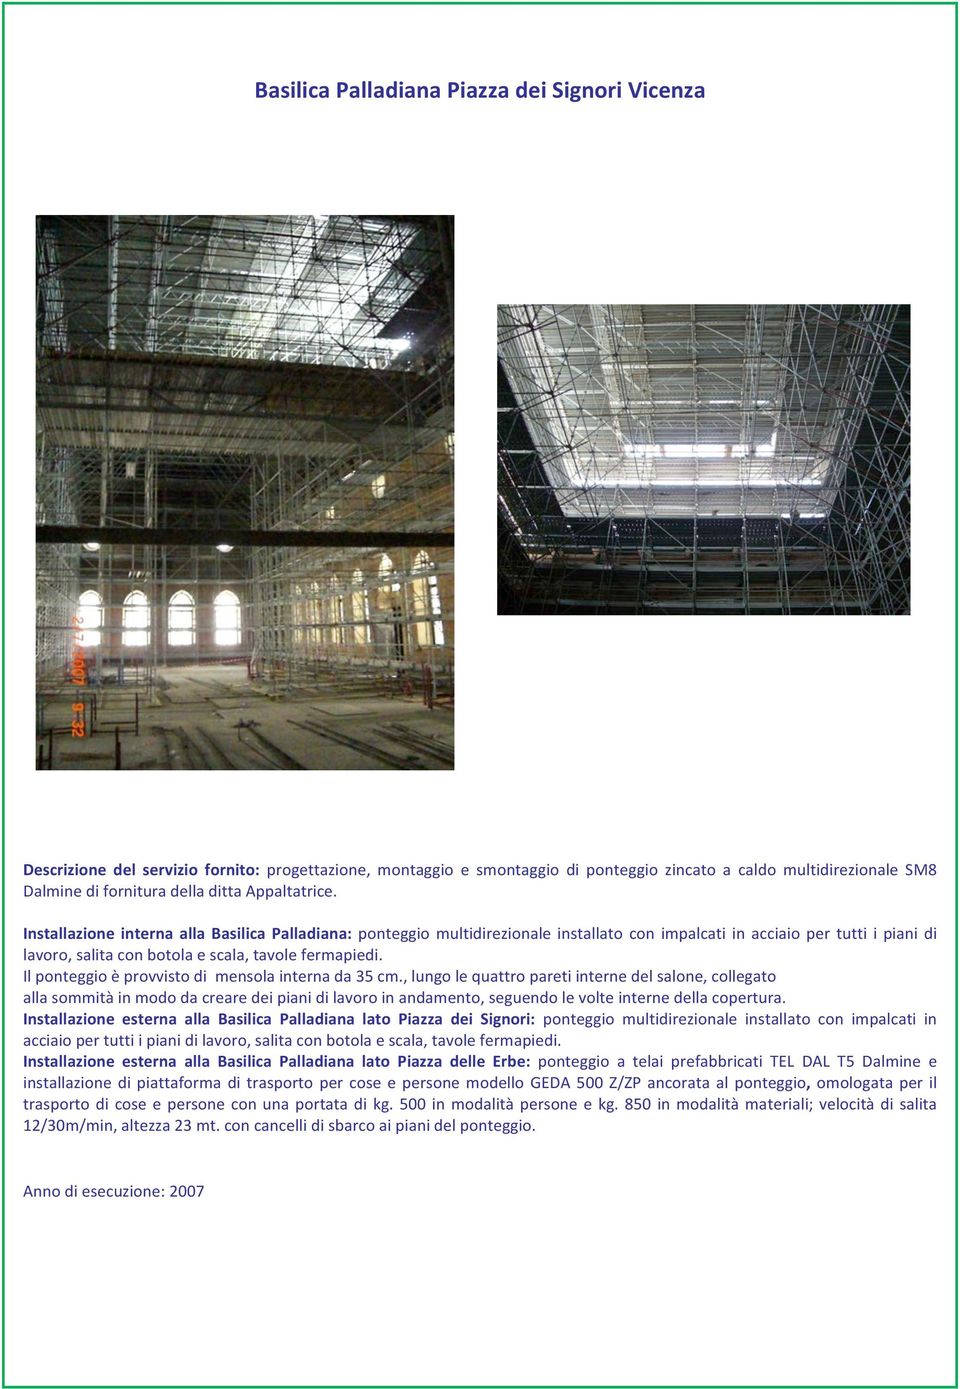 Installazione interna alla Basilica Palladiana: ponteggio multidirezionale installato con impalcati in acciaio per tutti i piani di lavoro, salita con botola e scala, tavole fermapiedi.